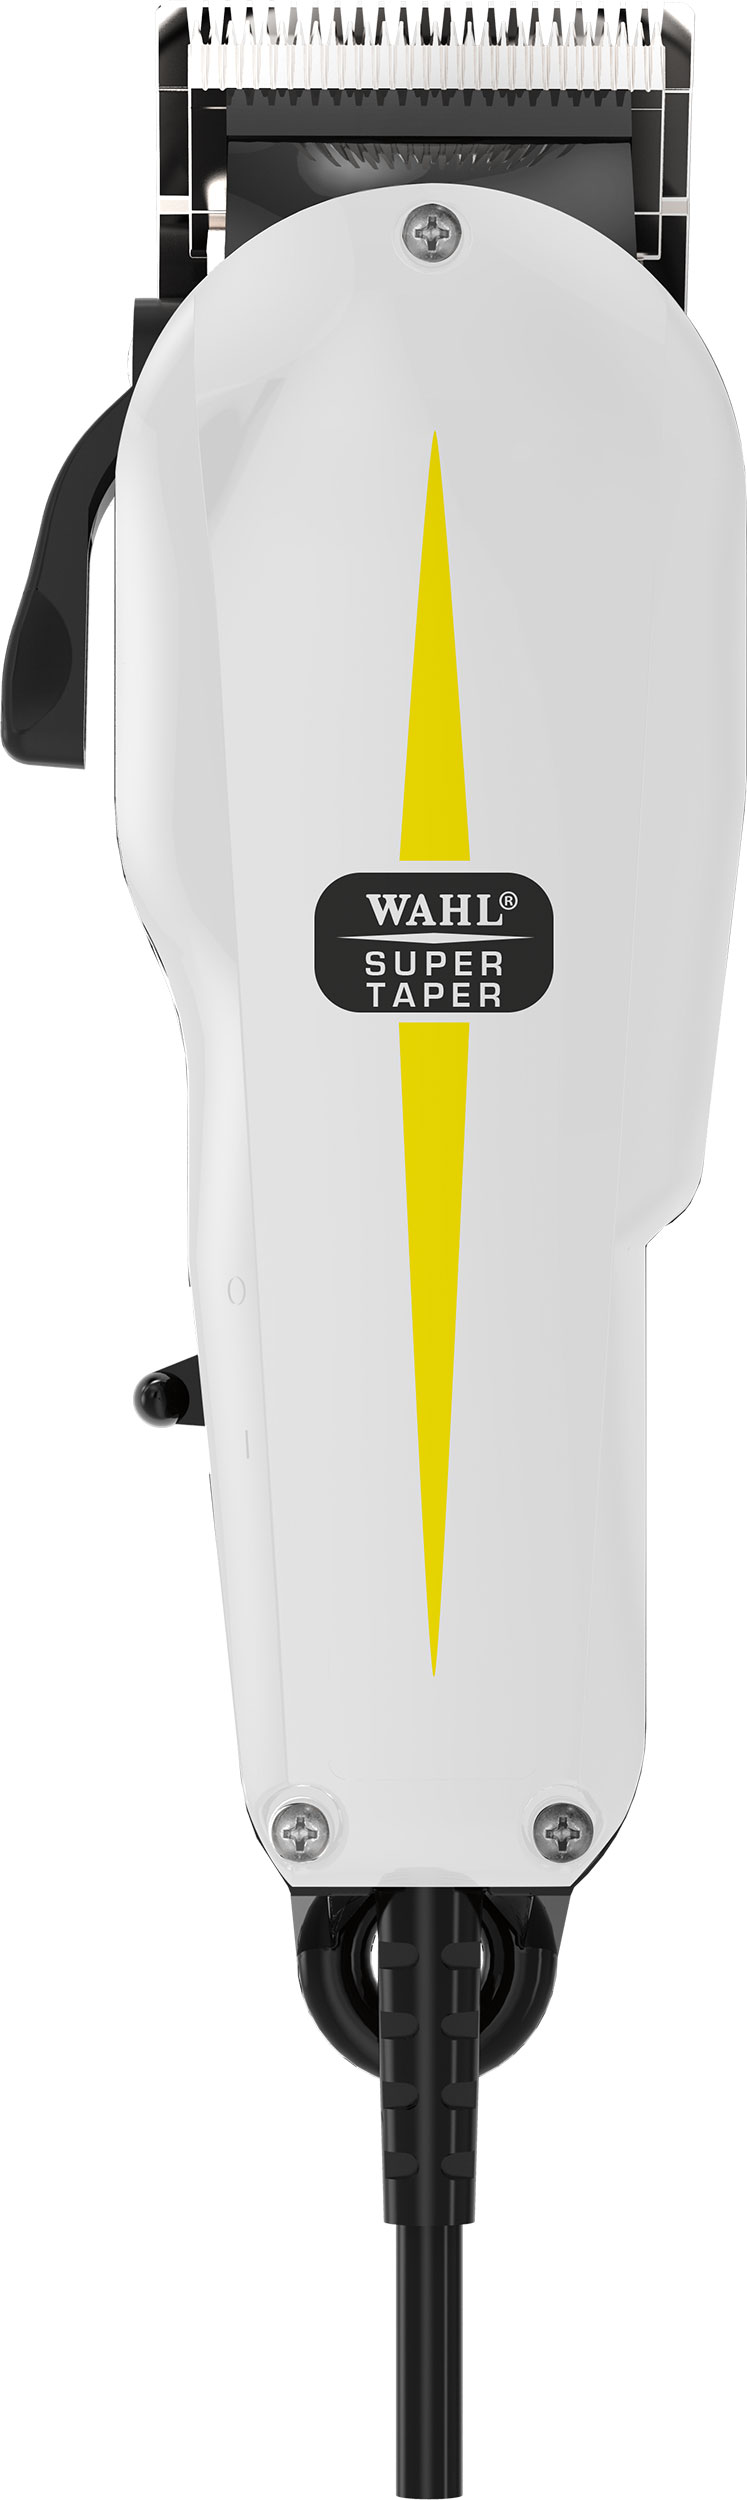 wahl-super-taper